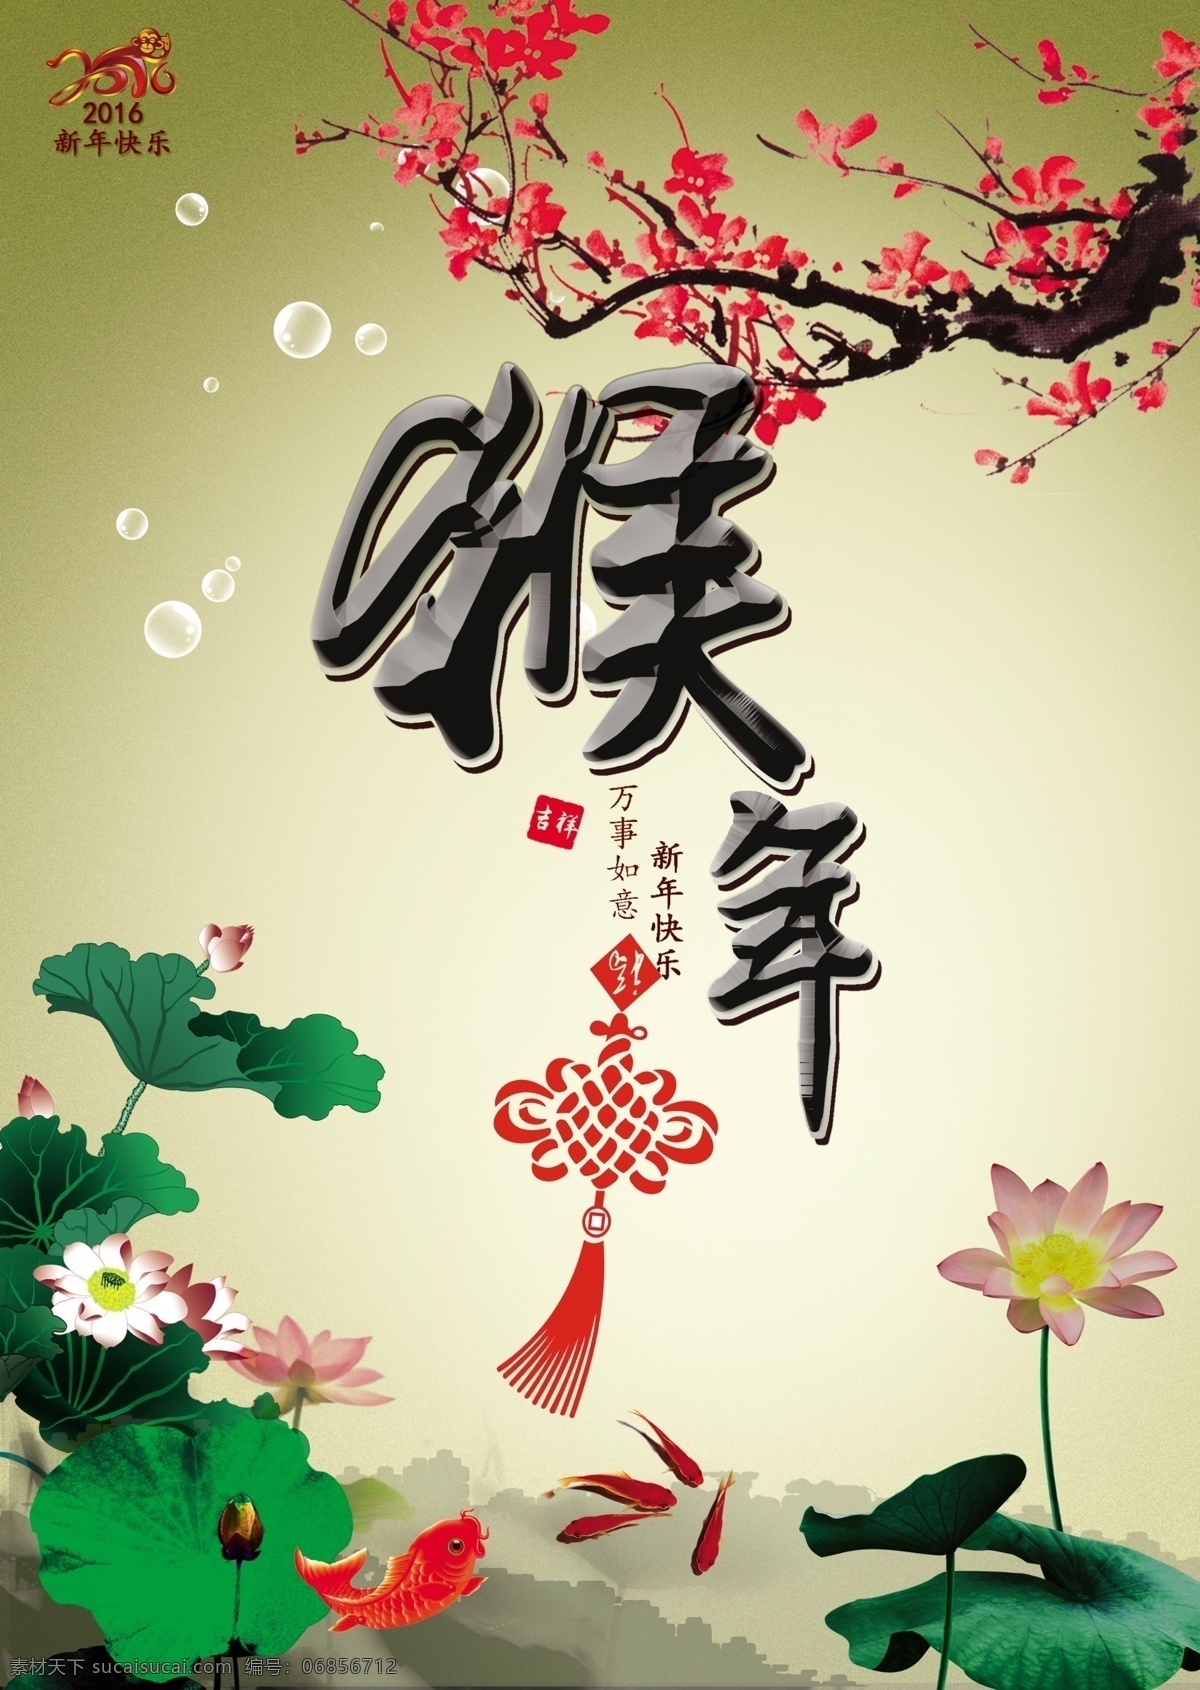 中国结 猴年海报 红色背景 猴年素材 活动背景图 中国风 喜迎新春 喜迎元旦 猴年 白色